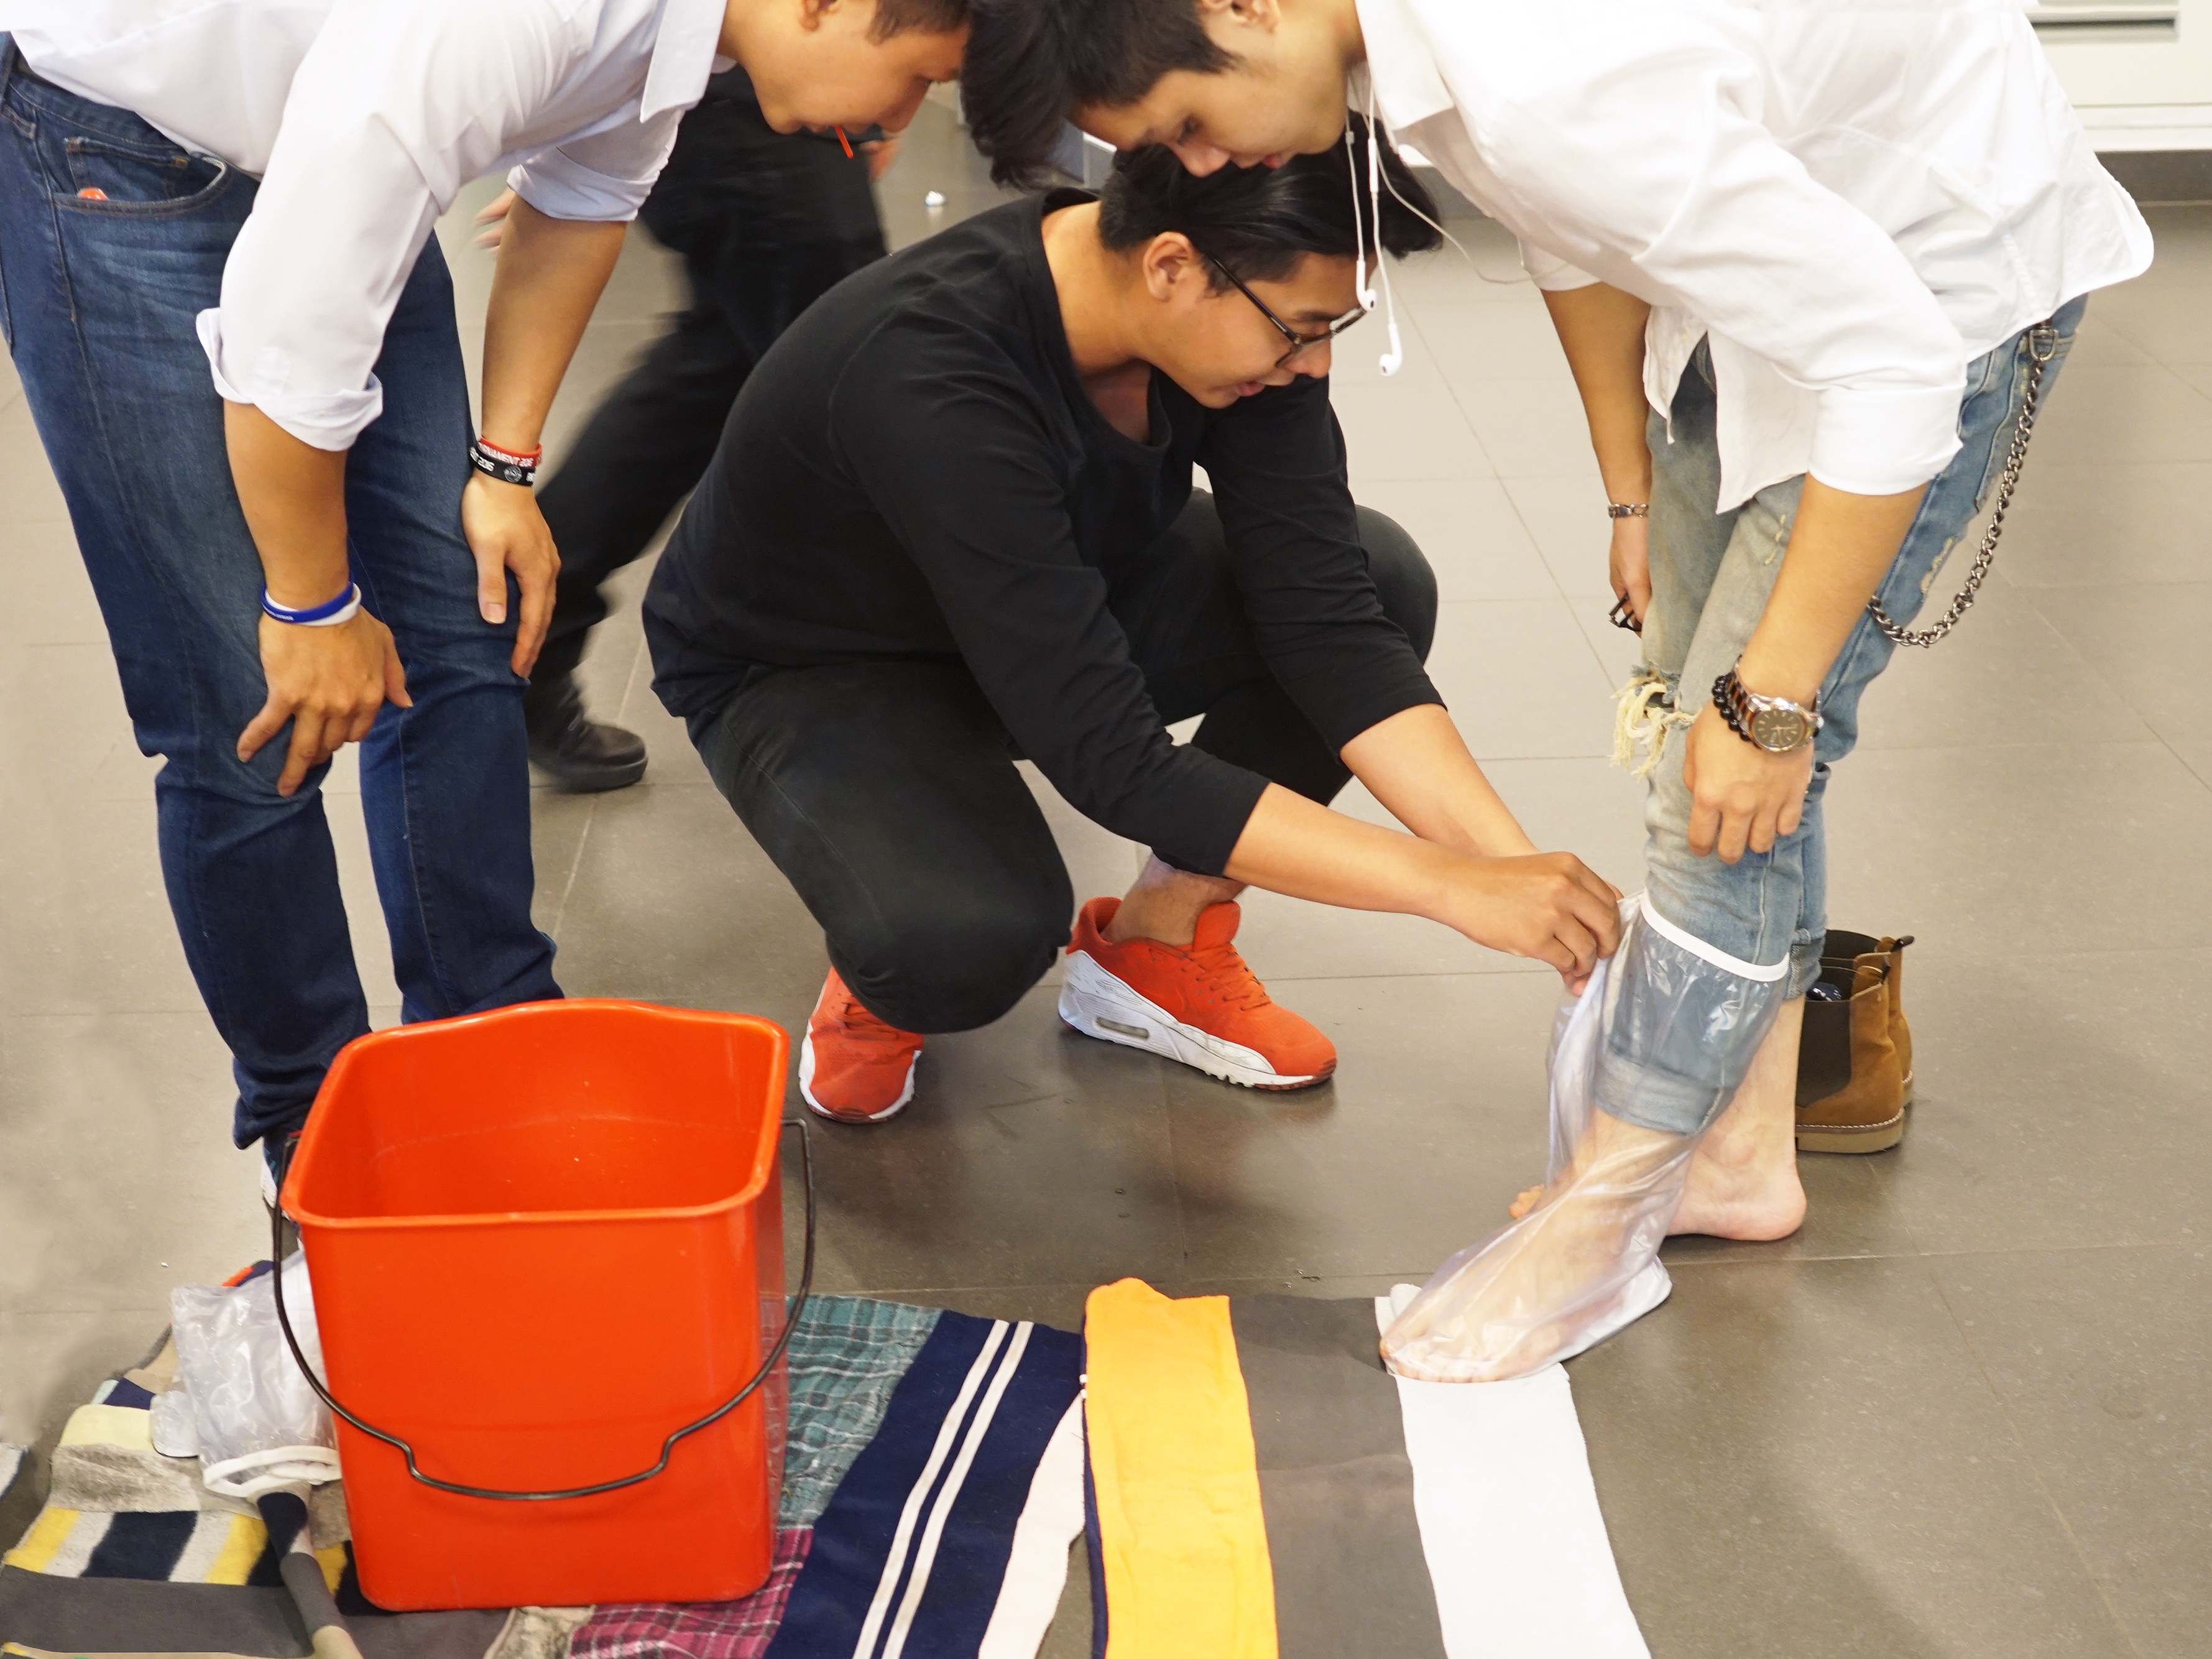 Một sinh viên tham quan triển lãm đang thử Conshoes - phụ kiện chống ướt giày trong mùa mưa.